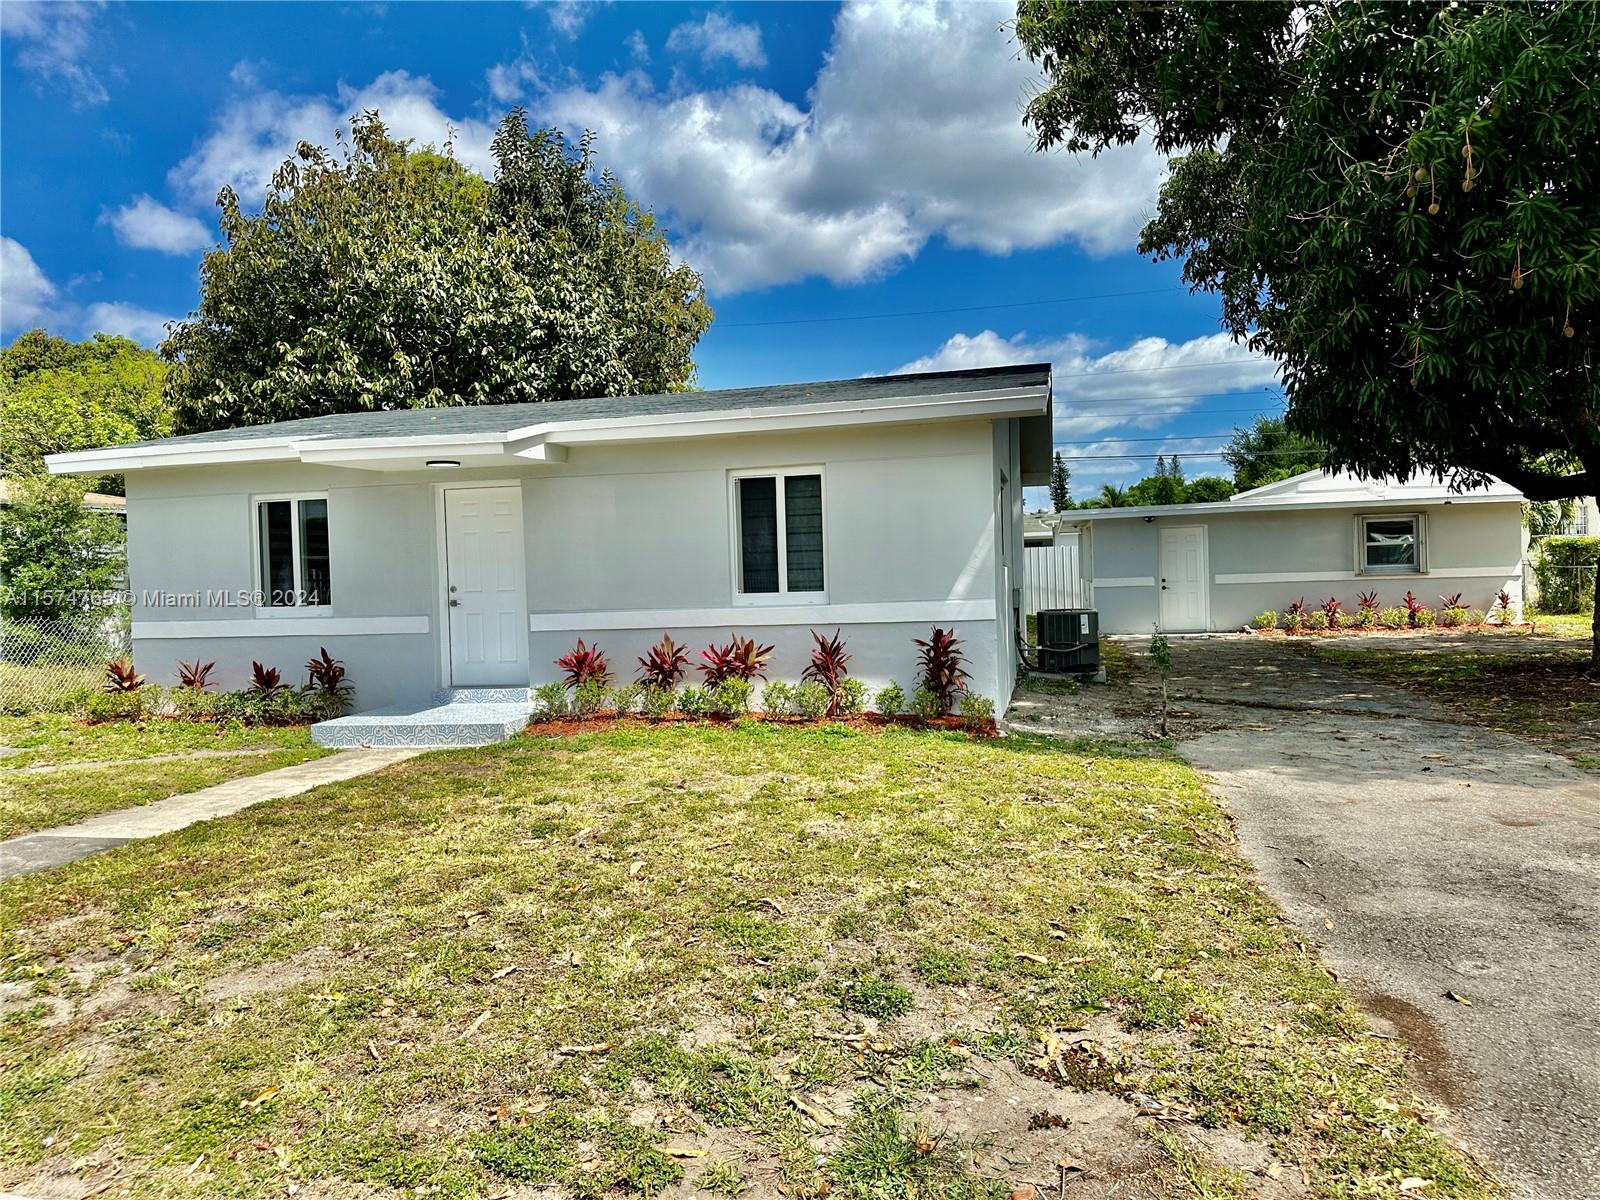 Rental Property at 2925 Nw 63rd St St, Miami, Broward County, Florida -  - $648,500 MO.